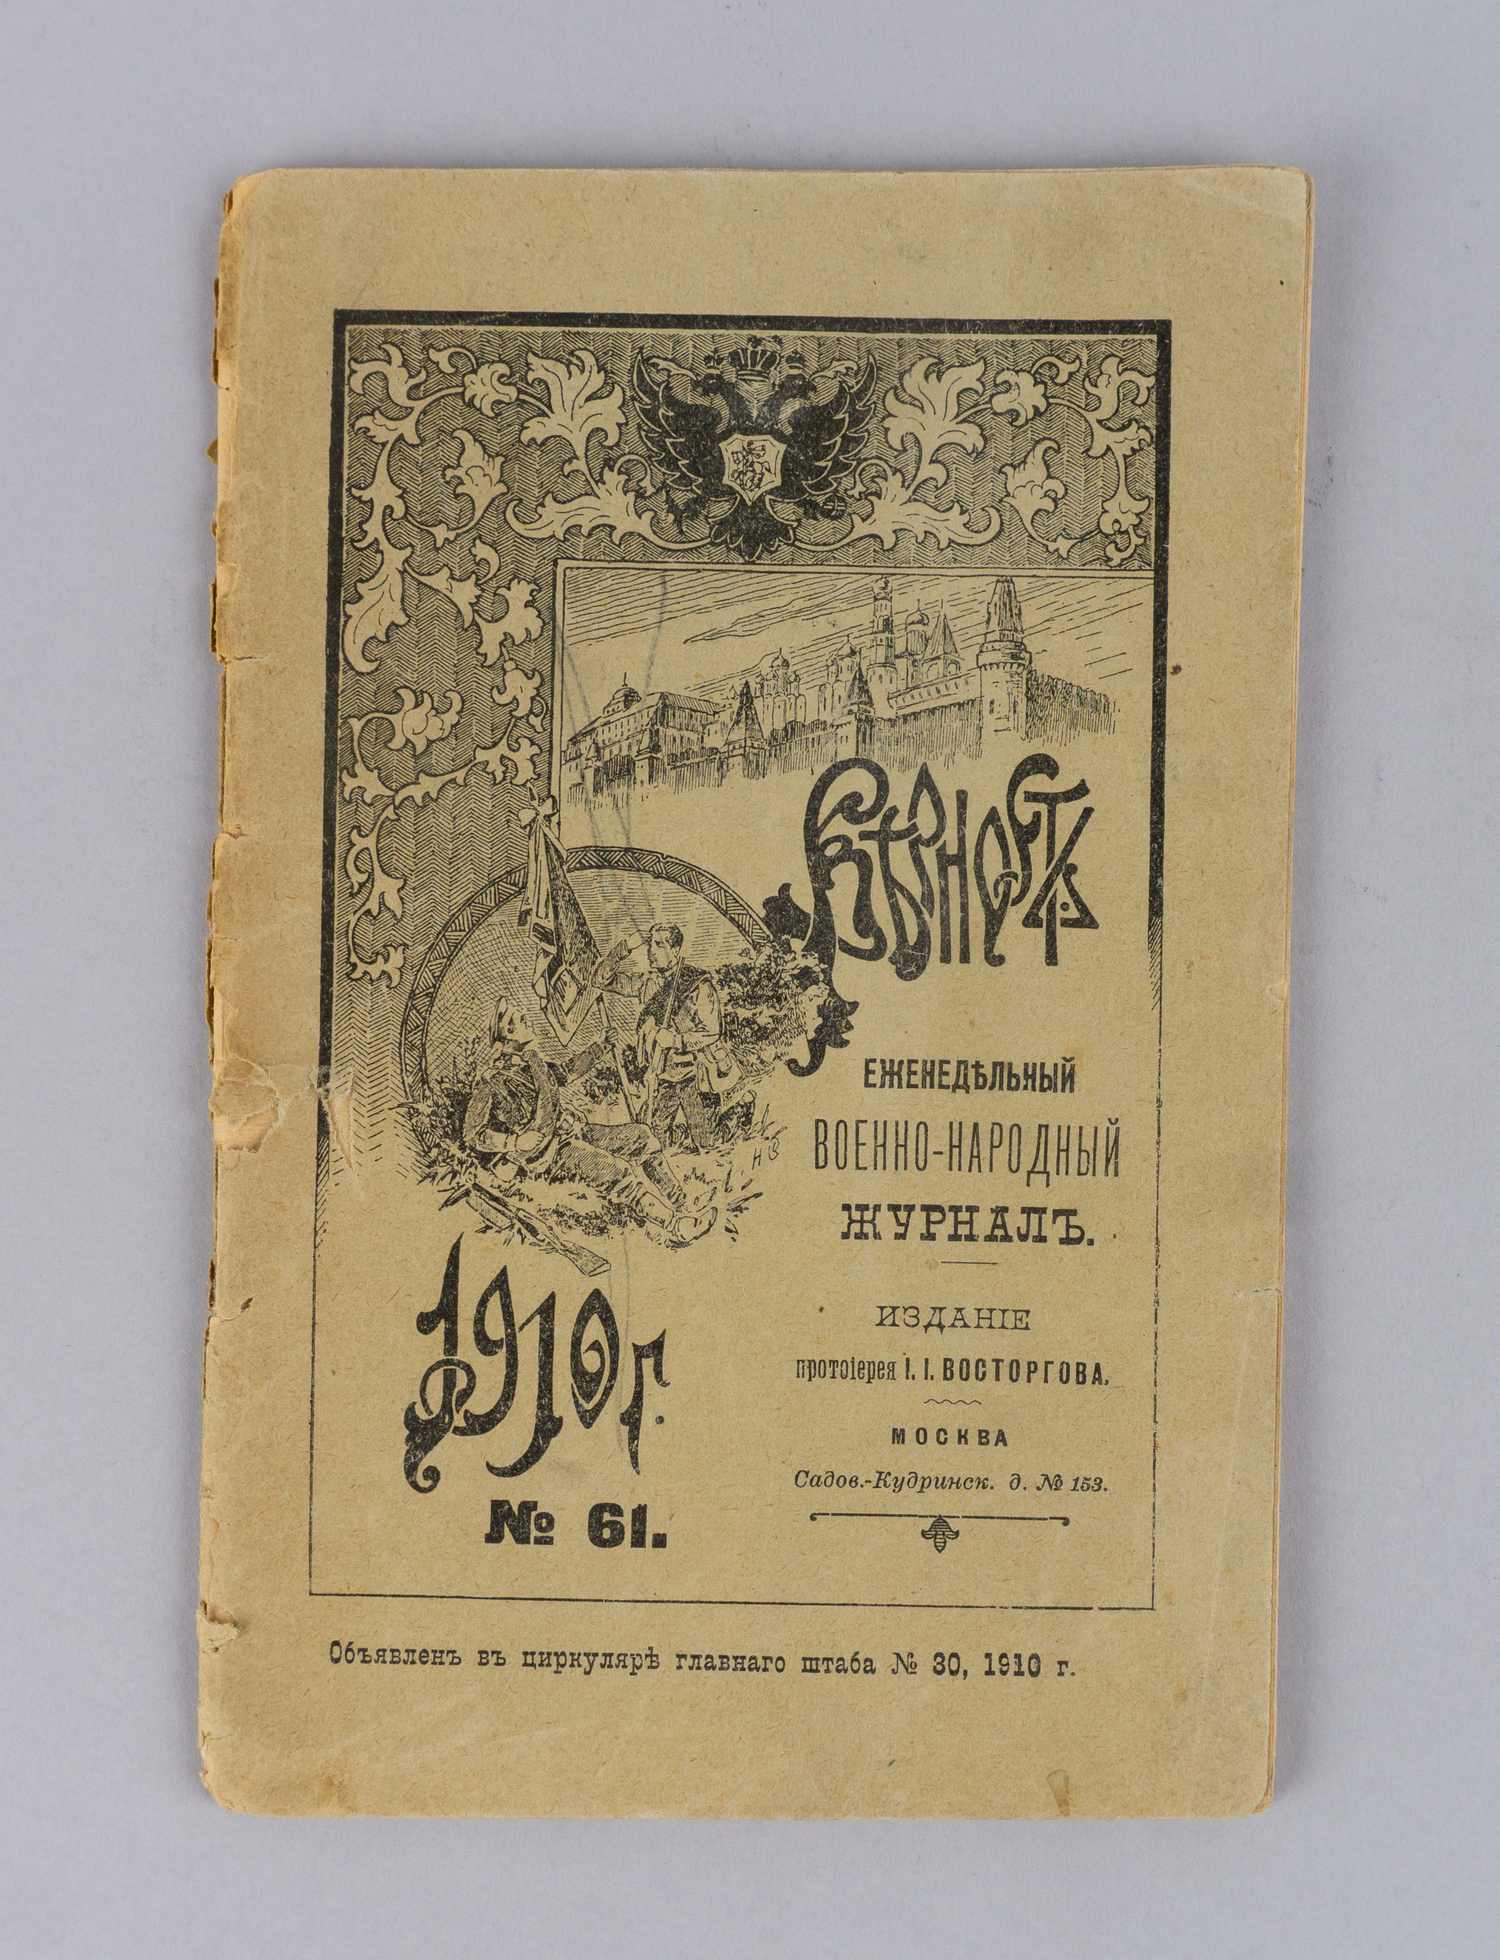 Верность. Еженедельный военно-народный журнал. 1910. №61.